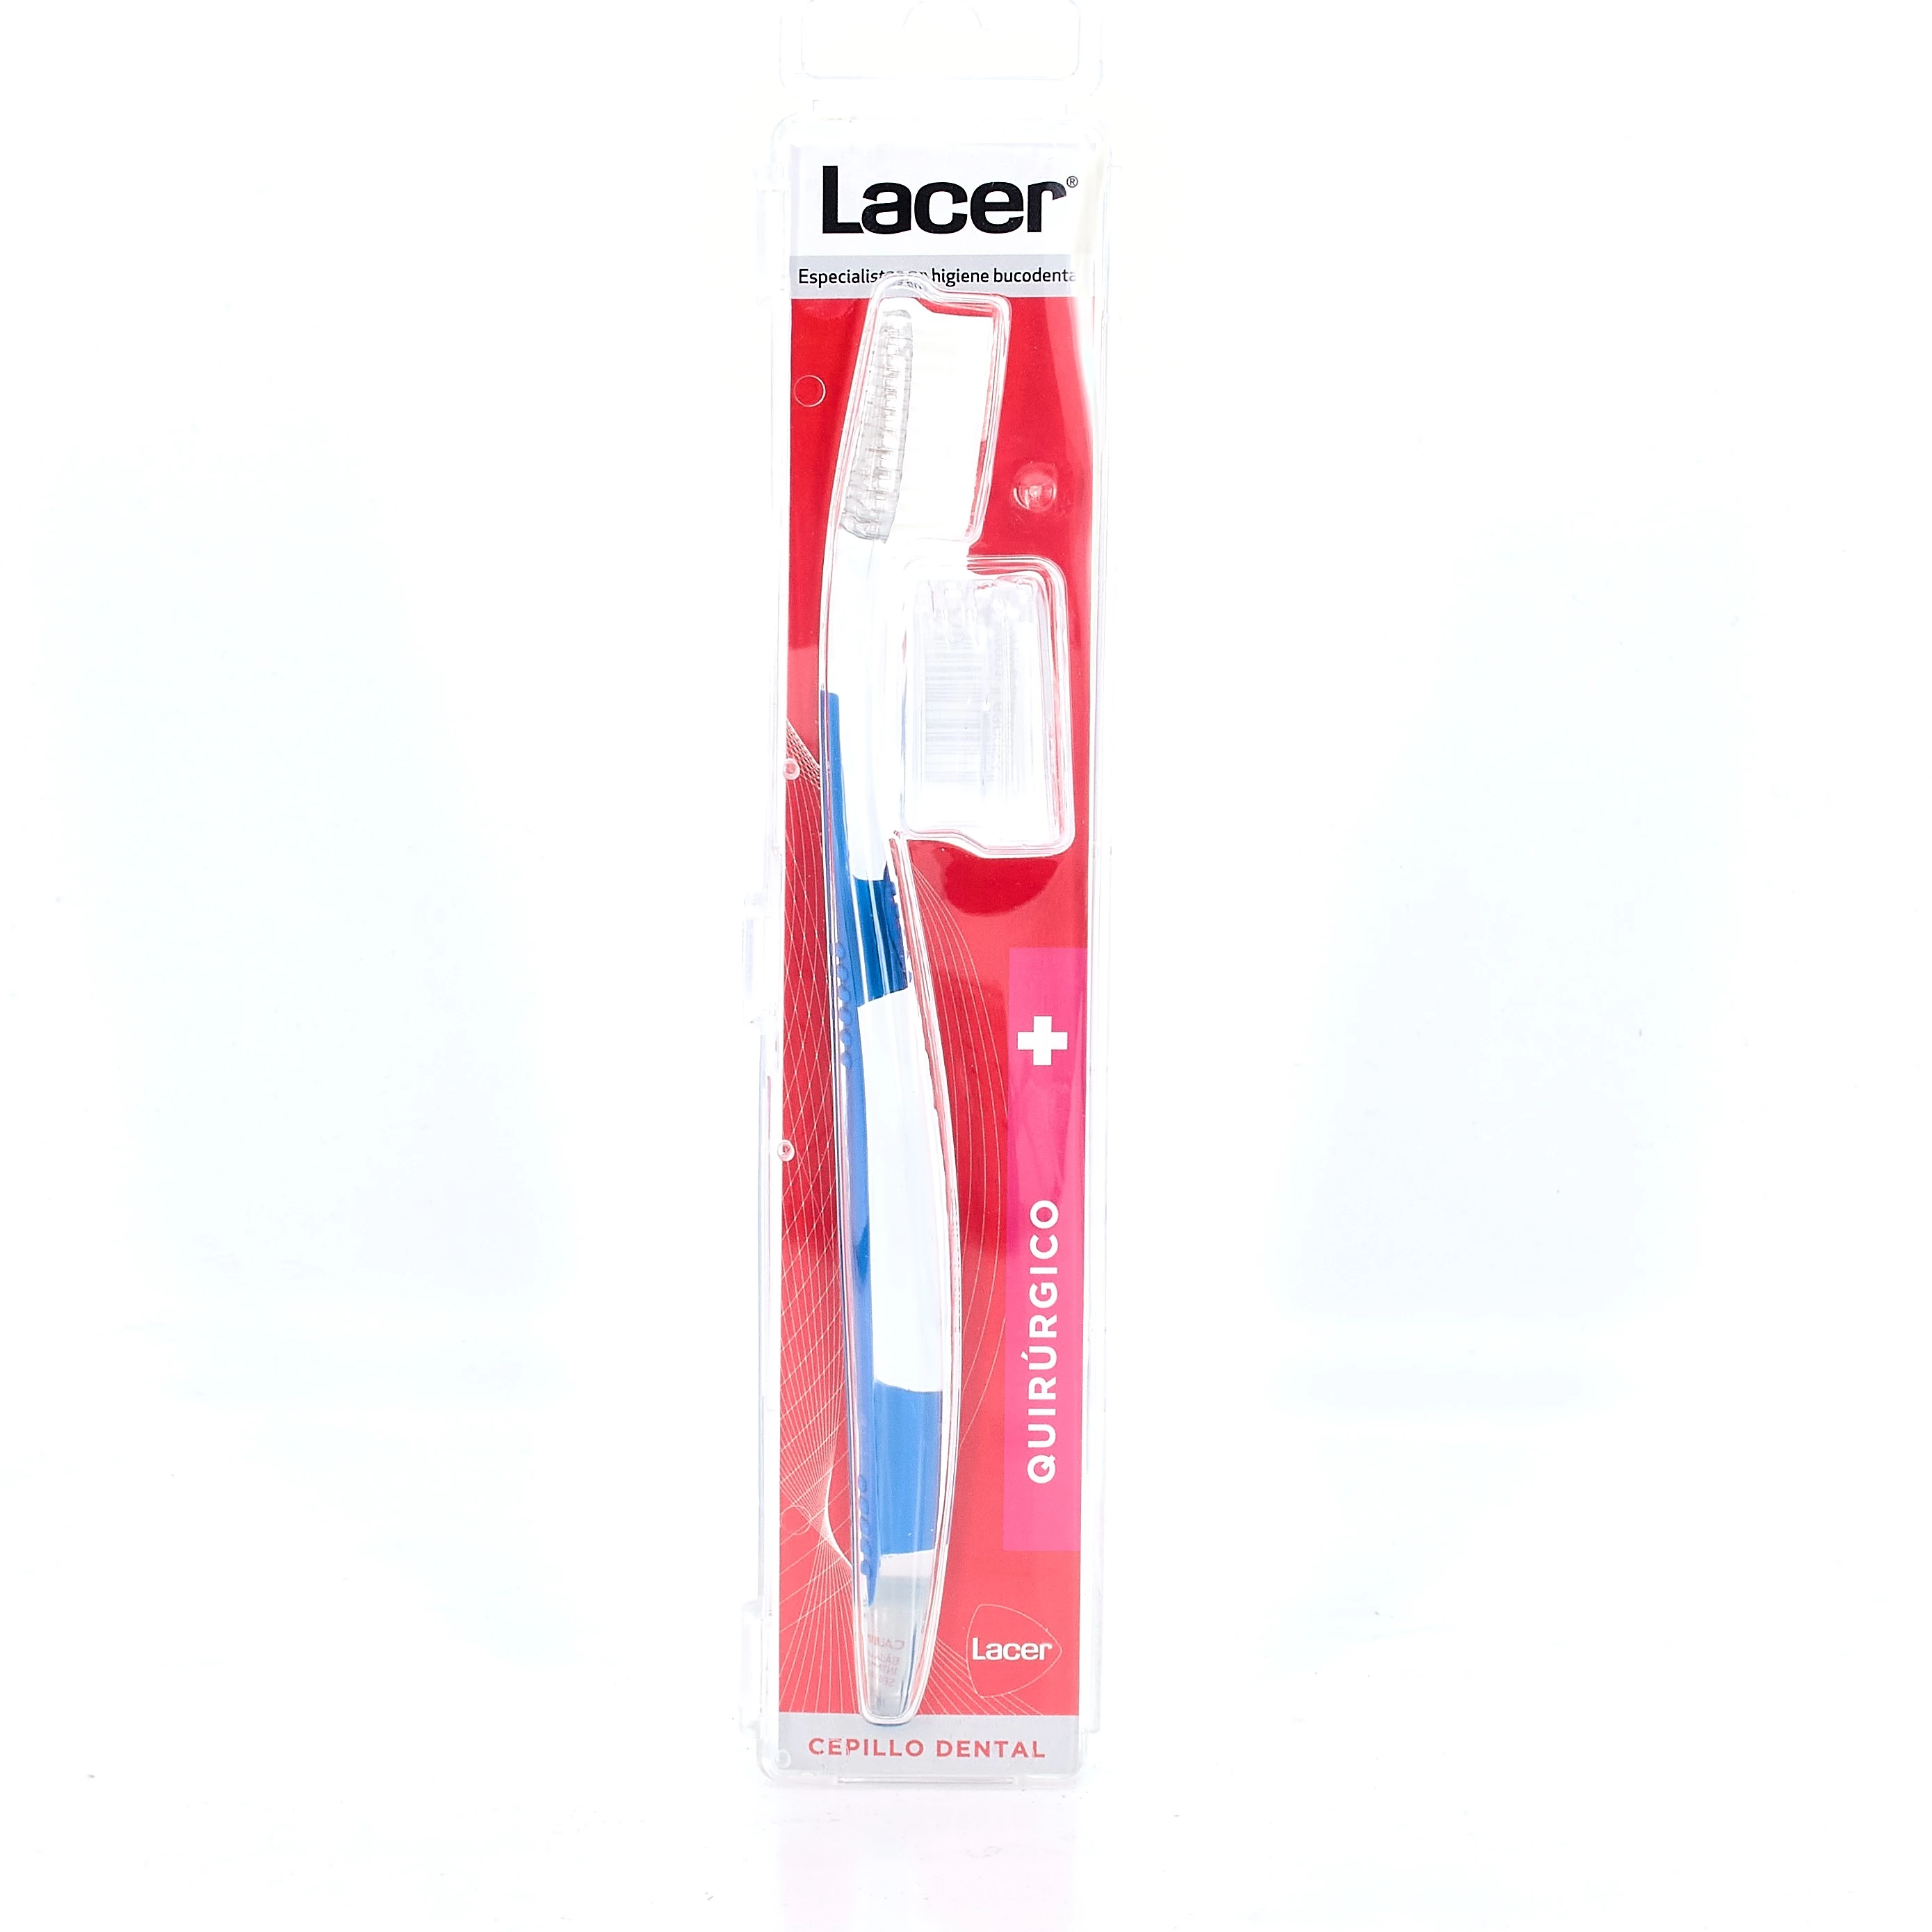 Lacer Technic cepillo dental quirúrgico, 1ud.